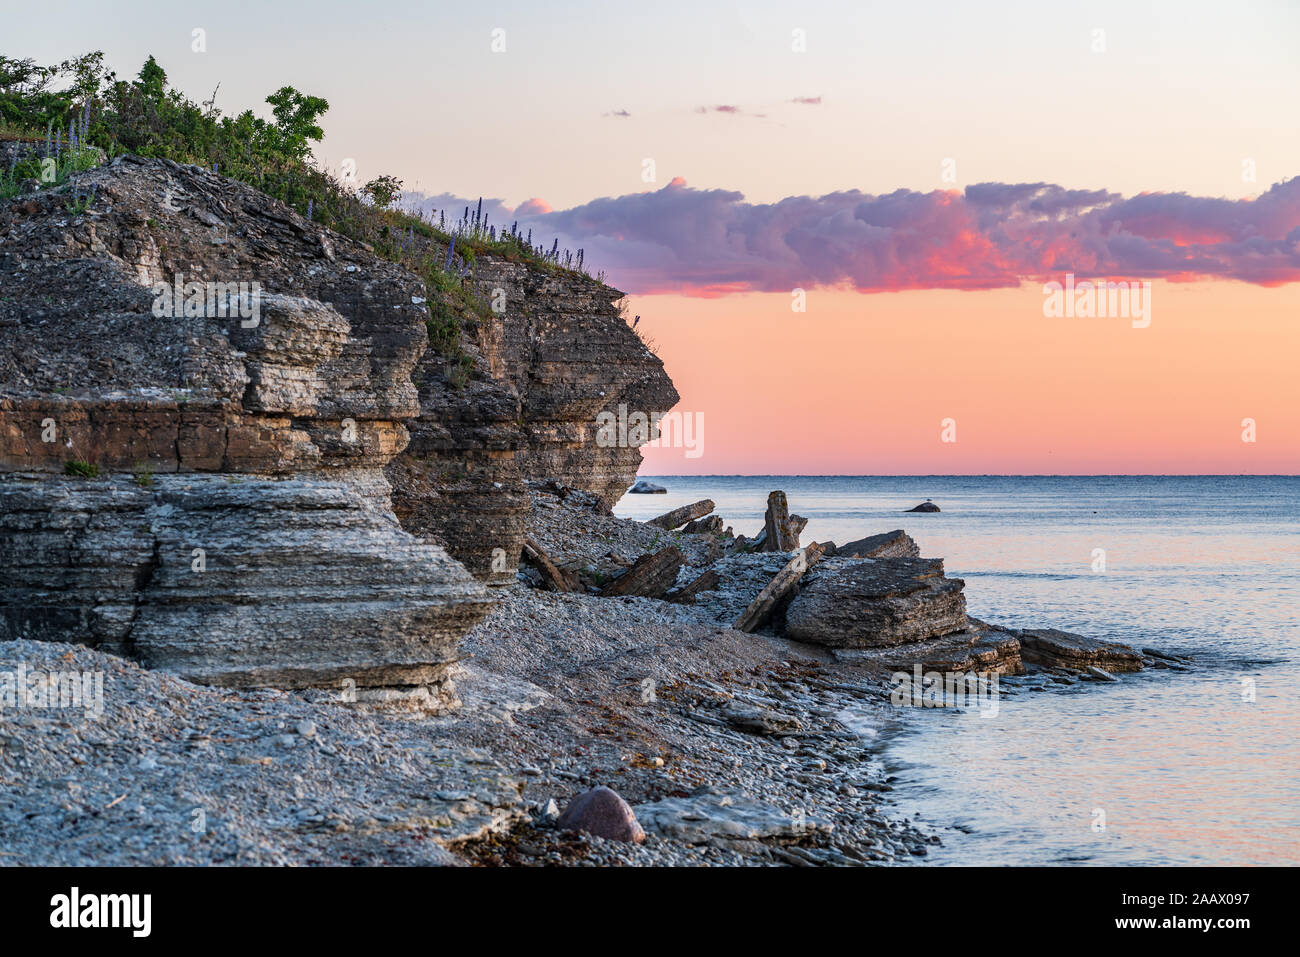 Mur de pierre sur la mer Baltique au cours de l'été. Pakri coast, island en Estonie, l'Europe. Banque D'Images